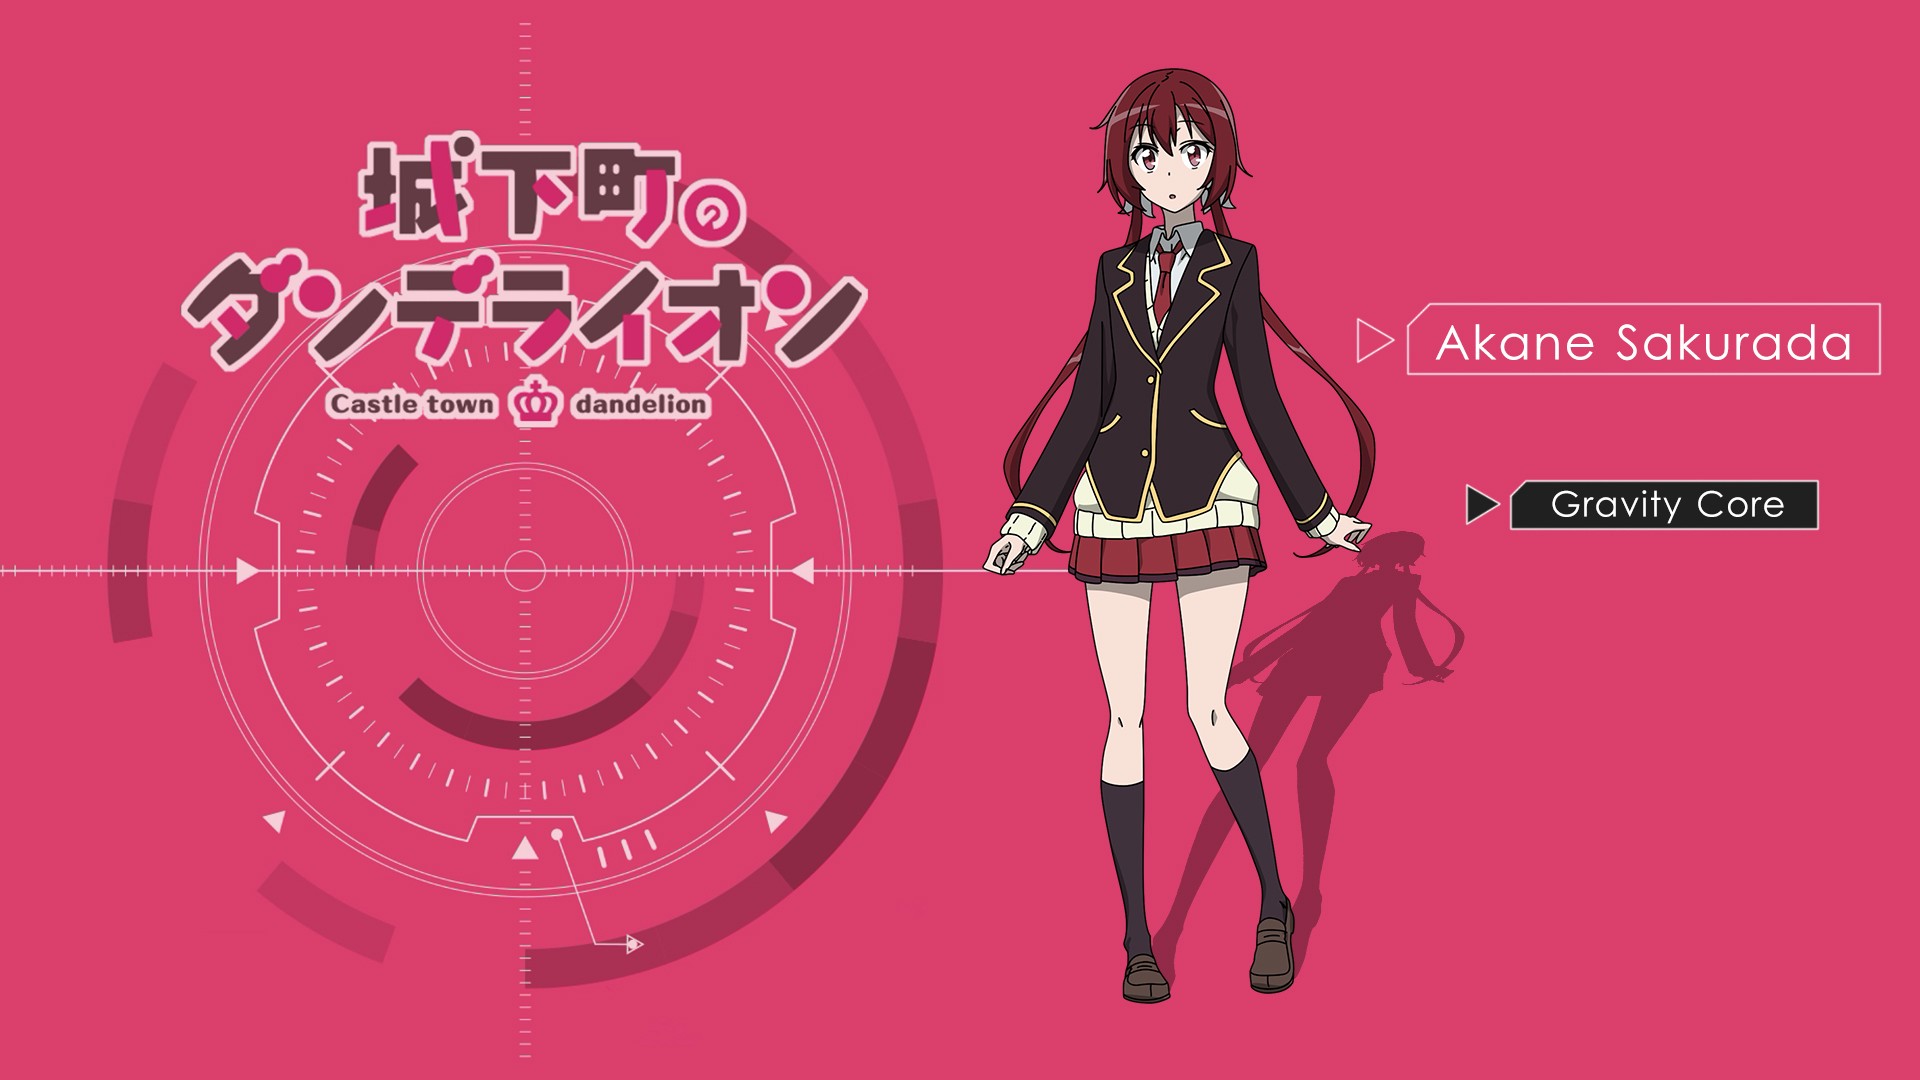 Joukamachi No Dandelion Tsunemori Akane Anime Girls Anime 1920x1080